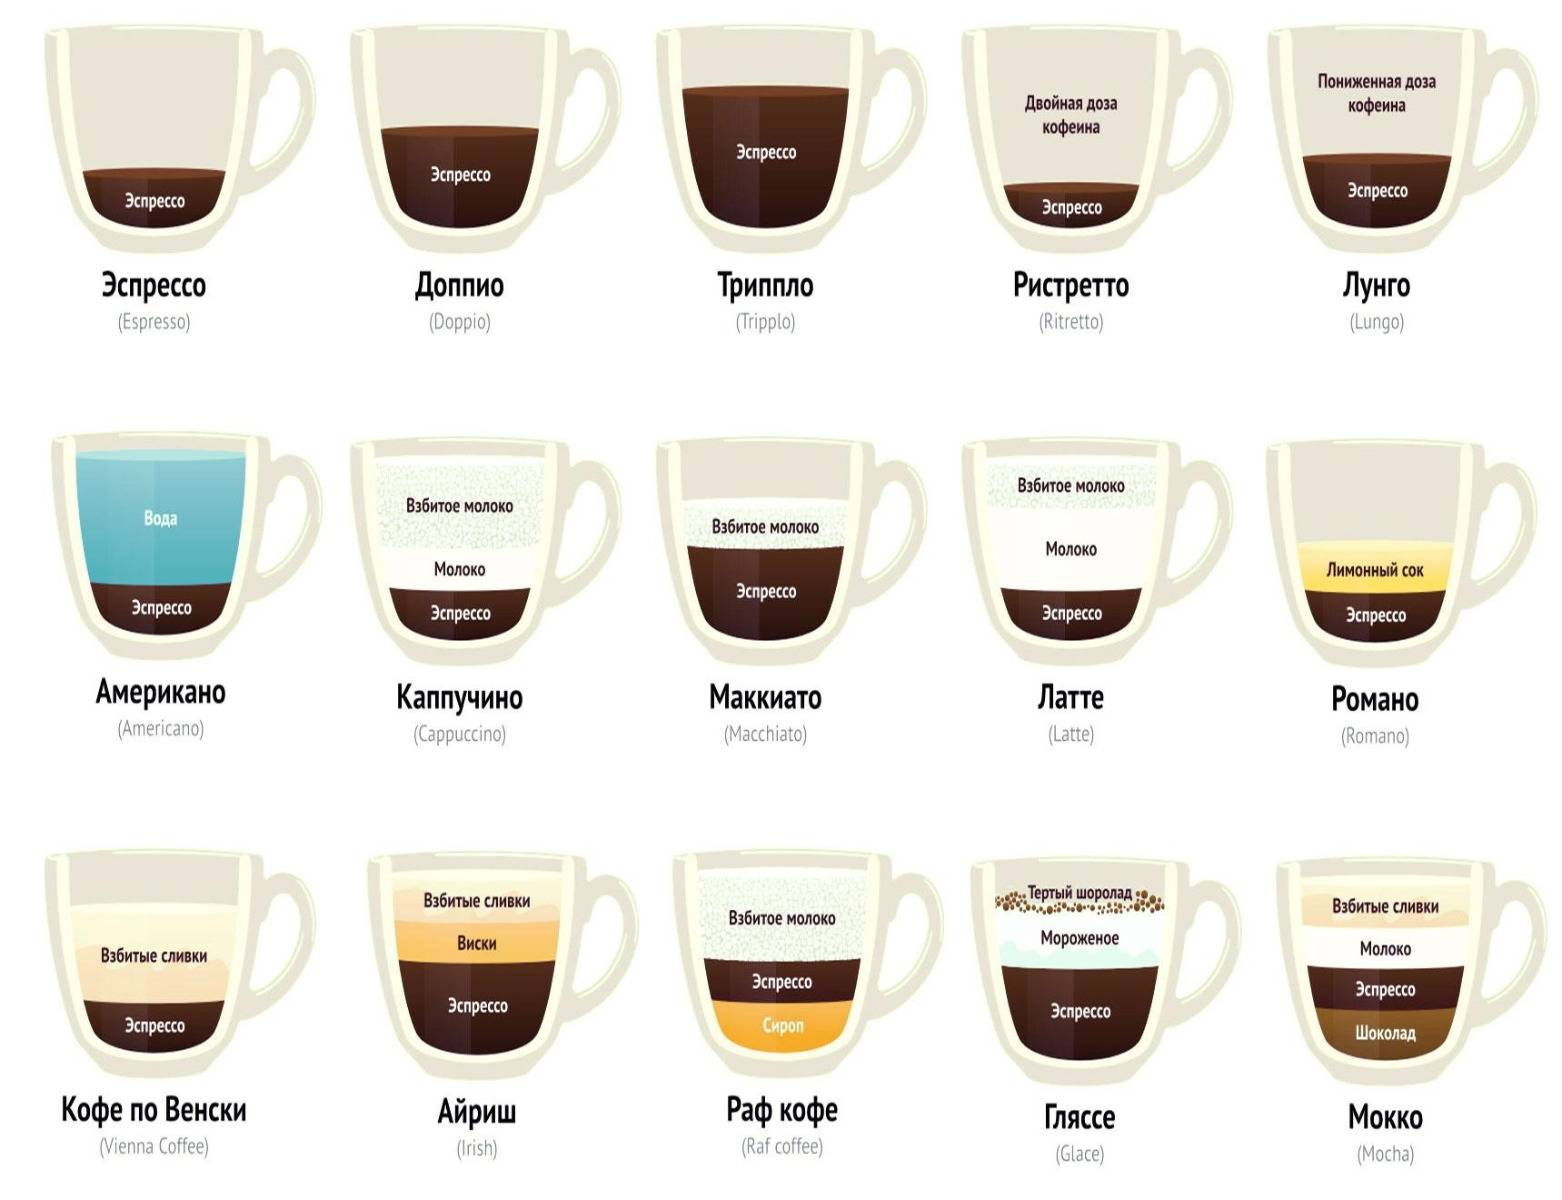 Советы бариста: какой помол кофе лучше для кофемашины